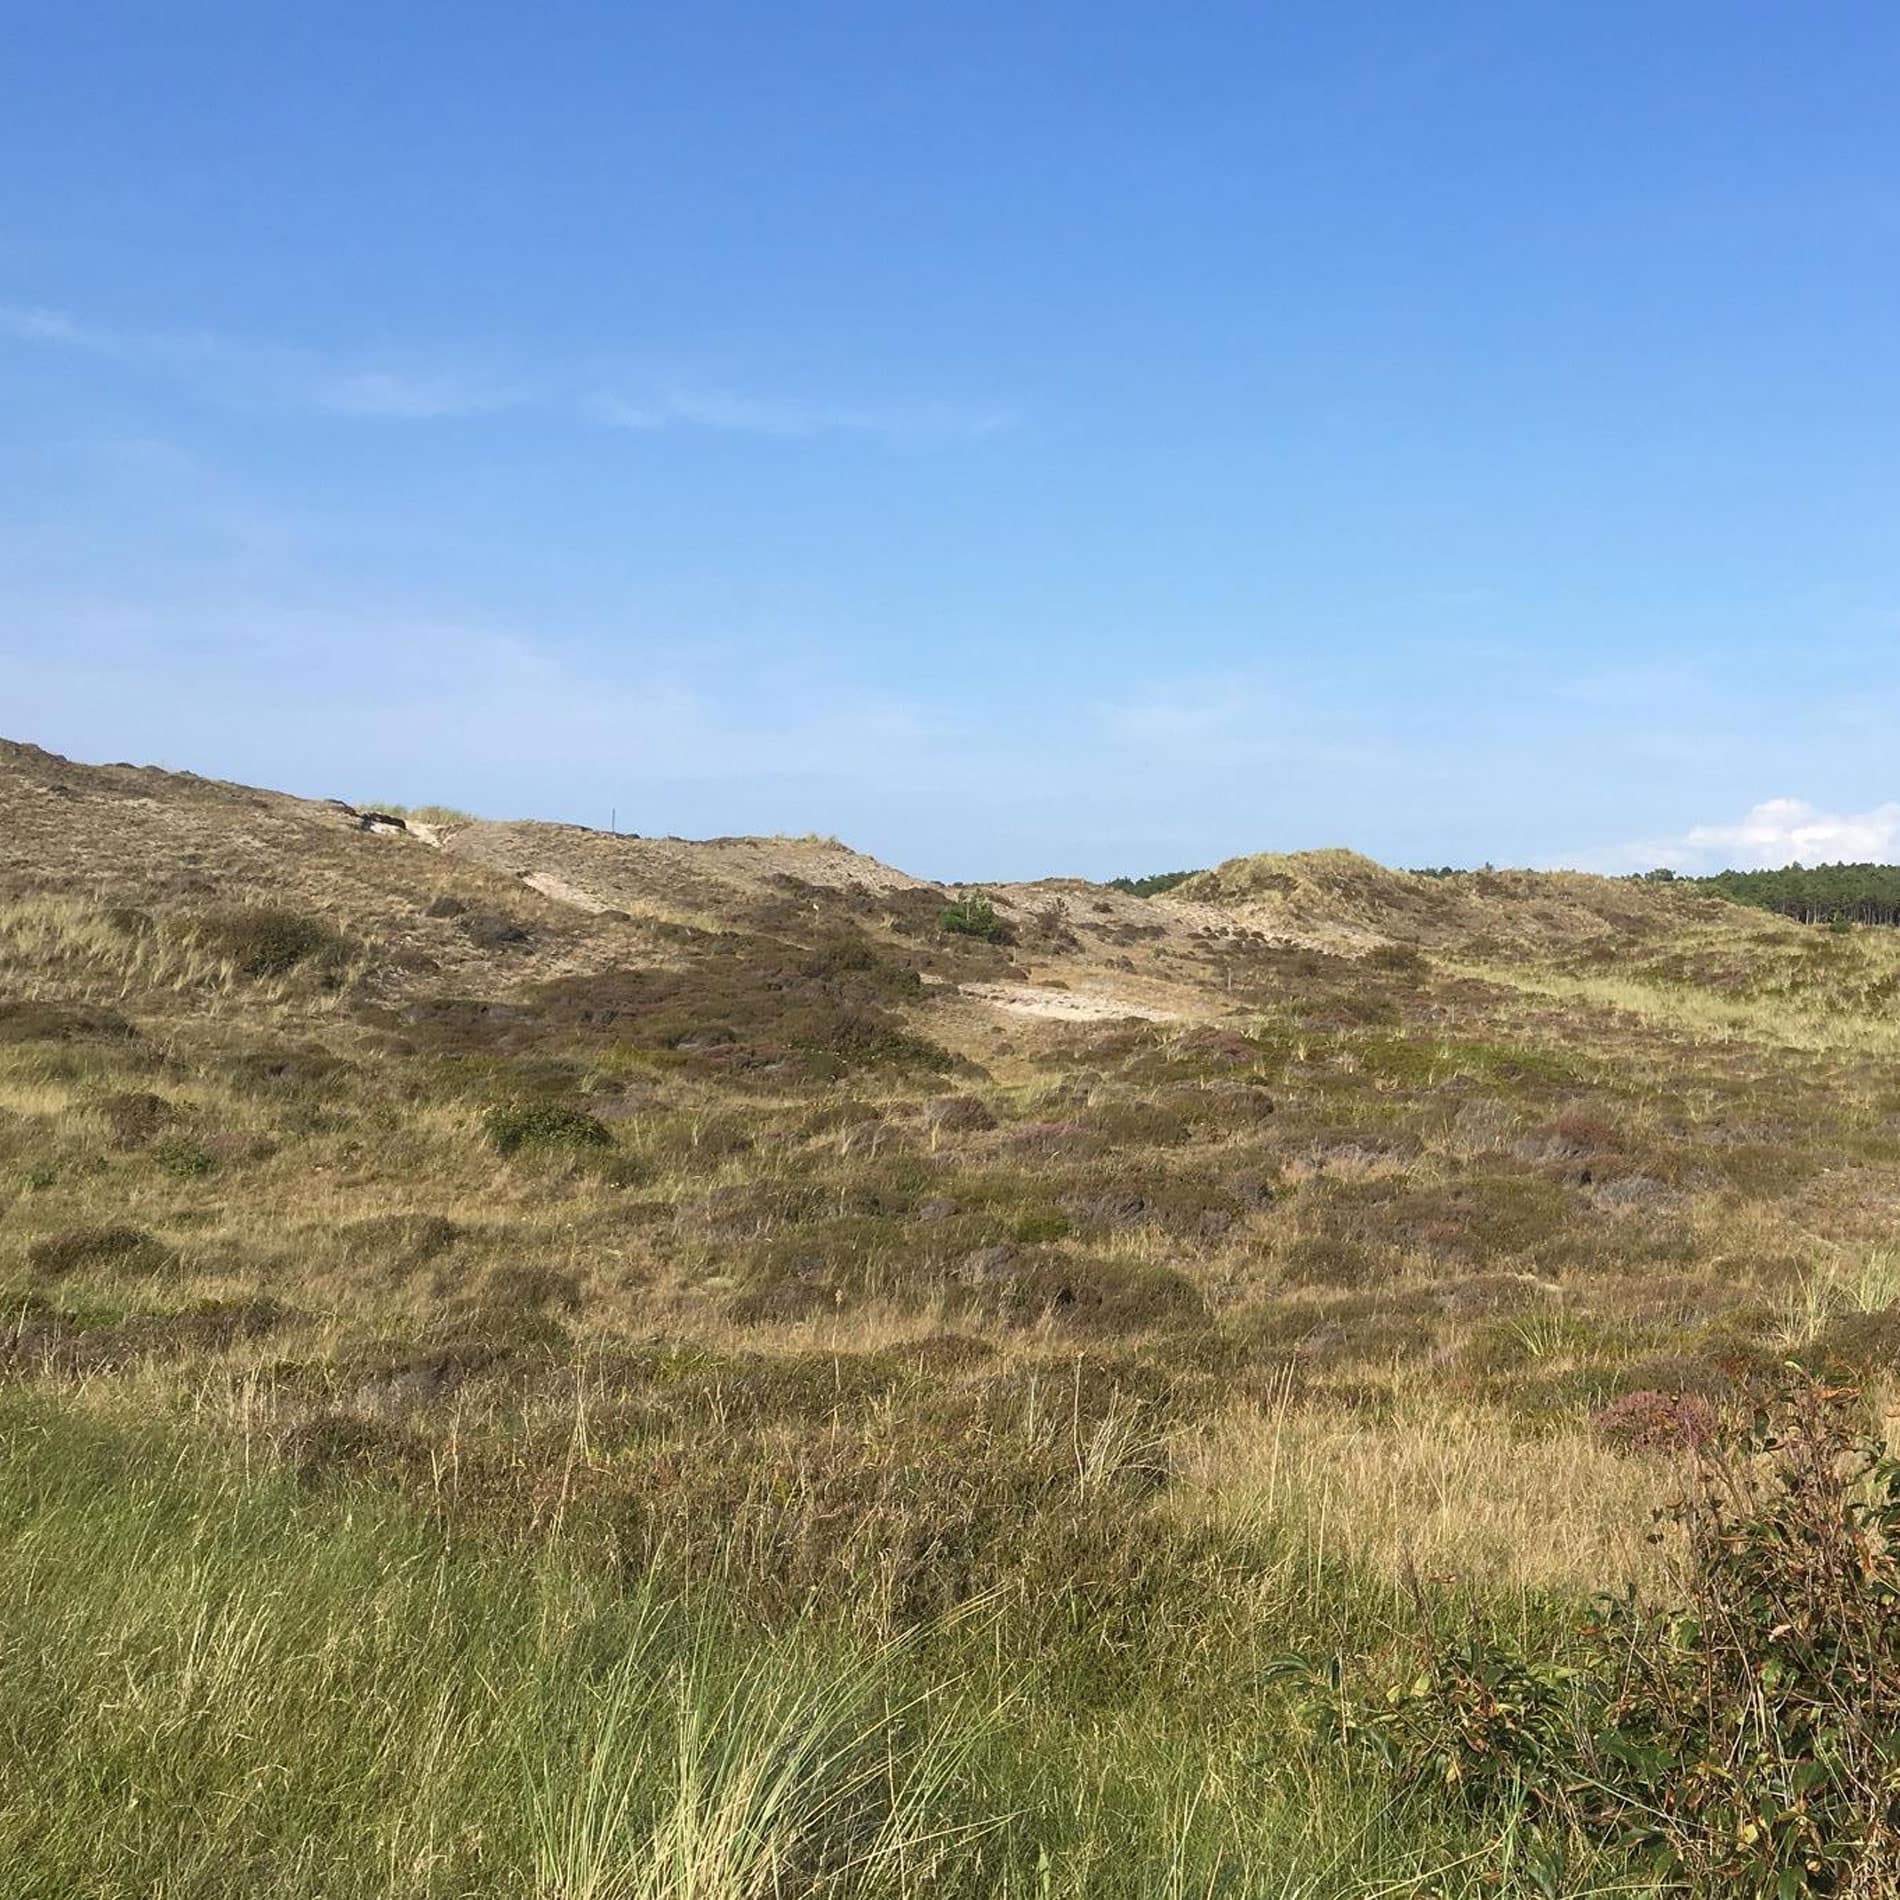 De duinen van Noord-Holland onder een helderblauwe lucht